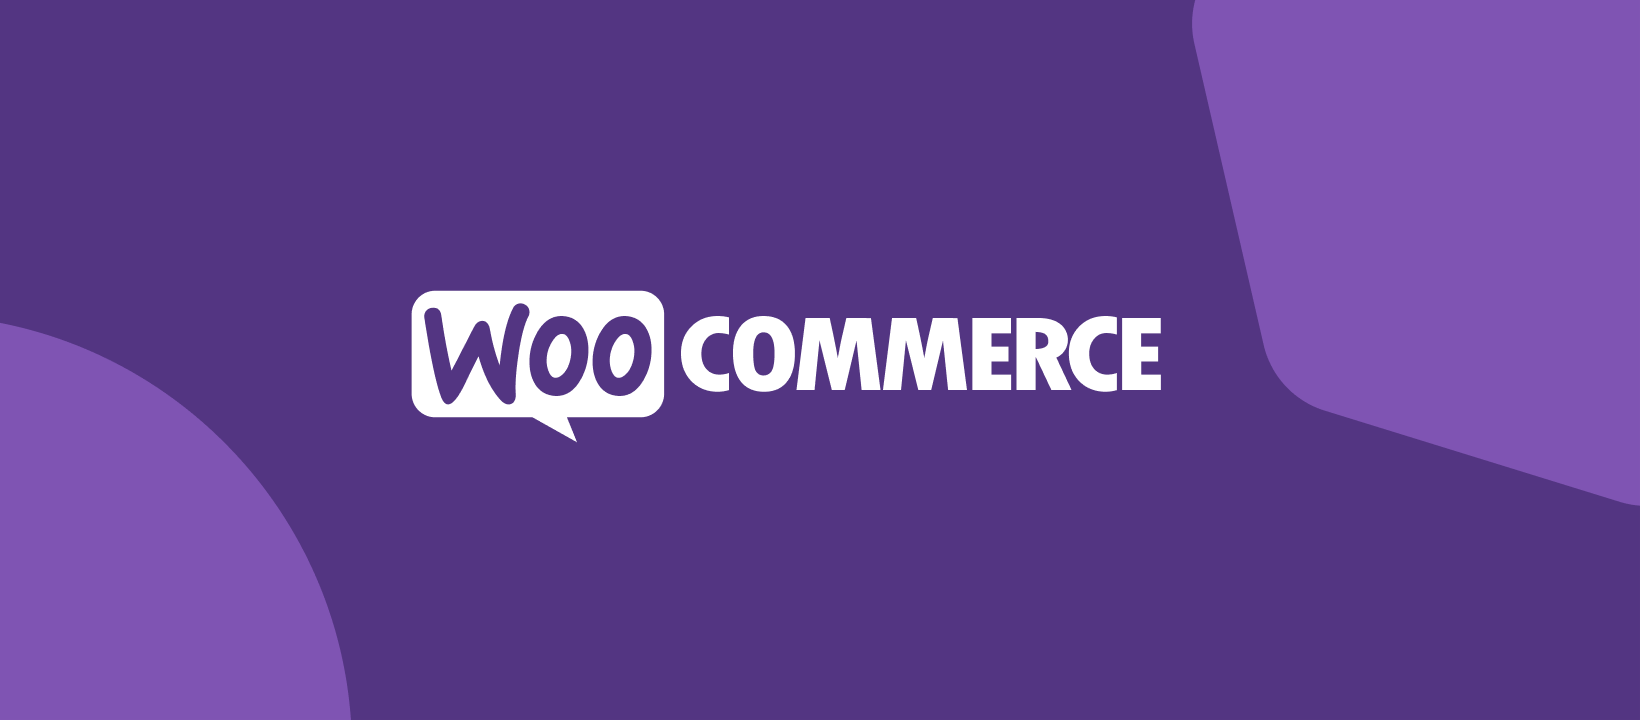 woo commerce platform